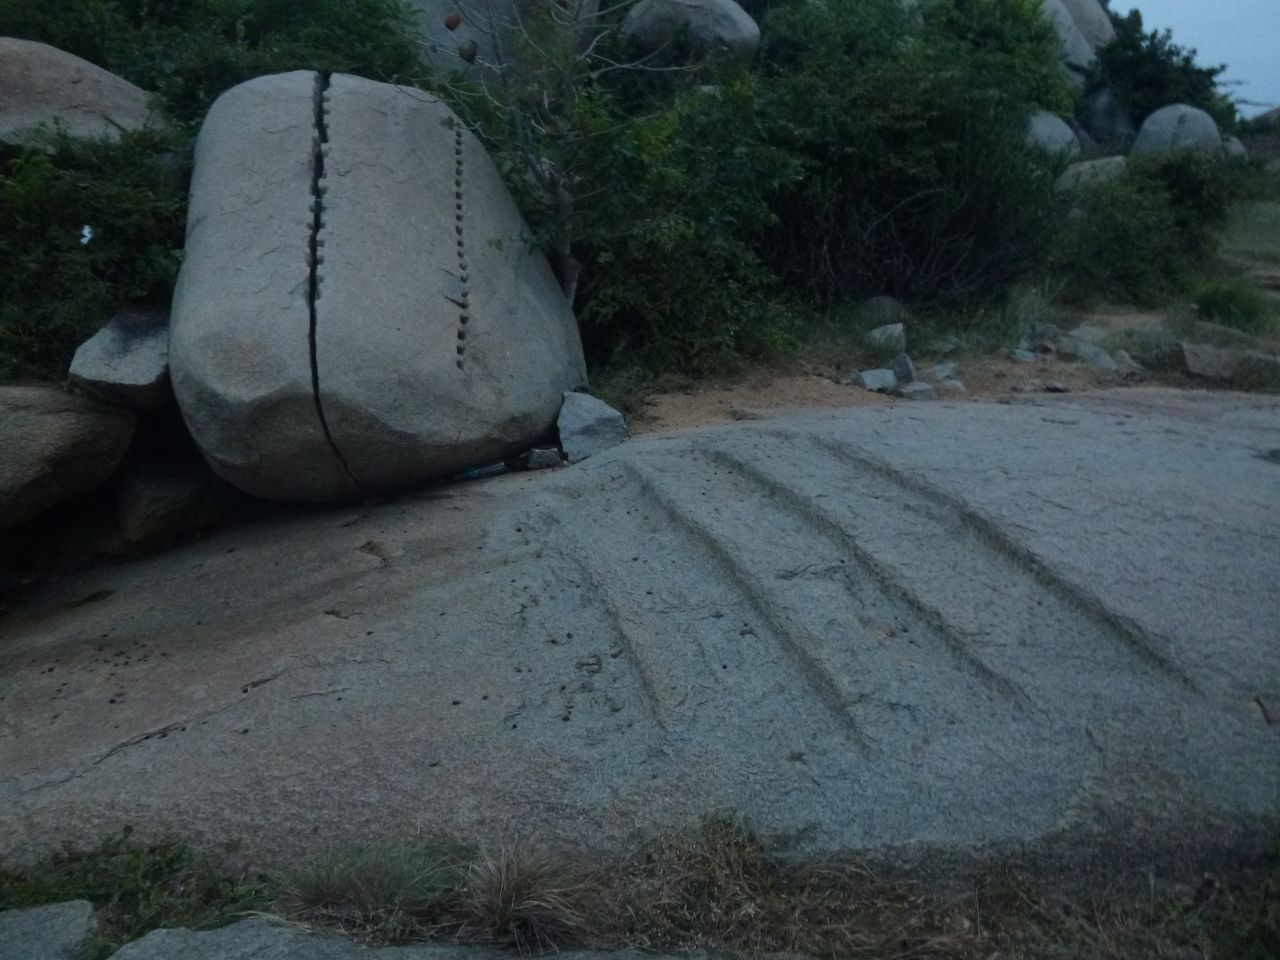 Так строители подготавливали камень к постройке - в ряд выдолбленных отверстий вбивали деревянные колышки, затем заливали их водой для разбухания и камень трескался ровно по колышкам. - Хампи (Виджаянагара) Индия, ноябрь 2013